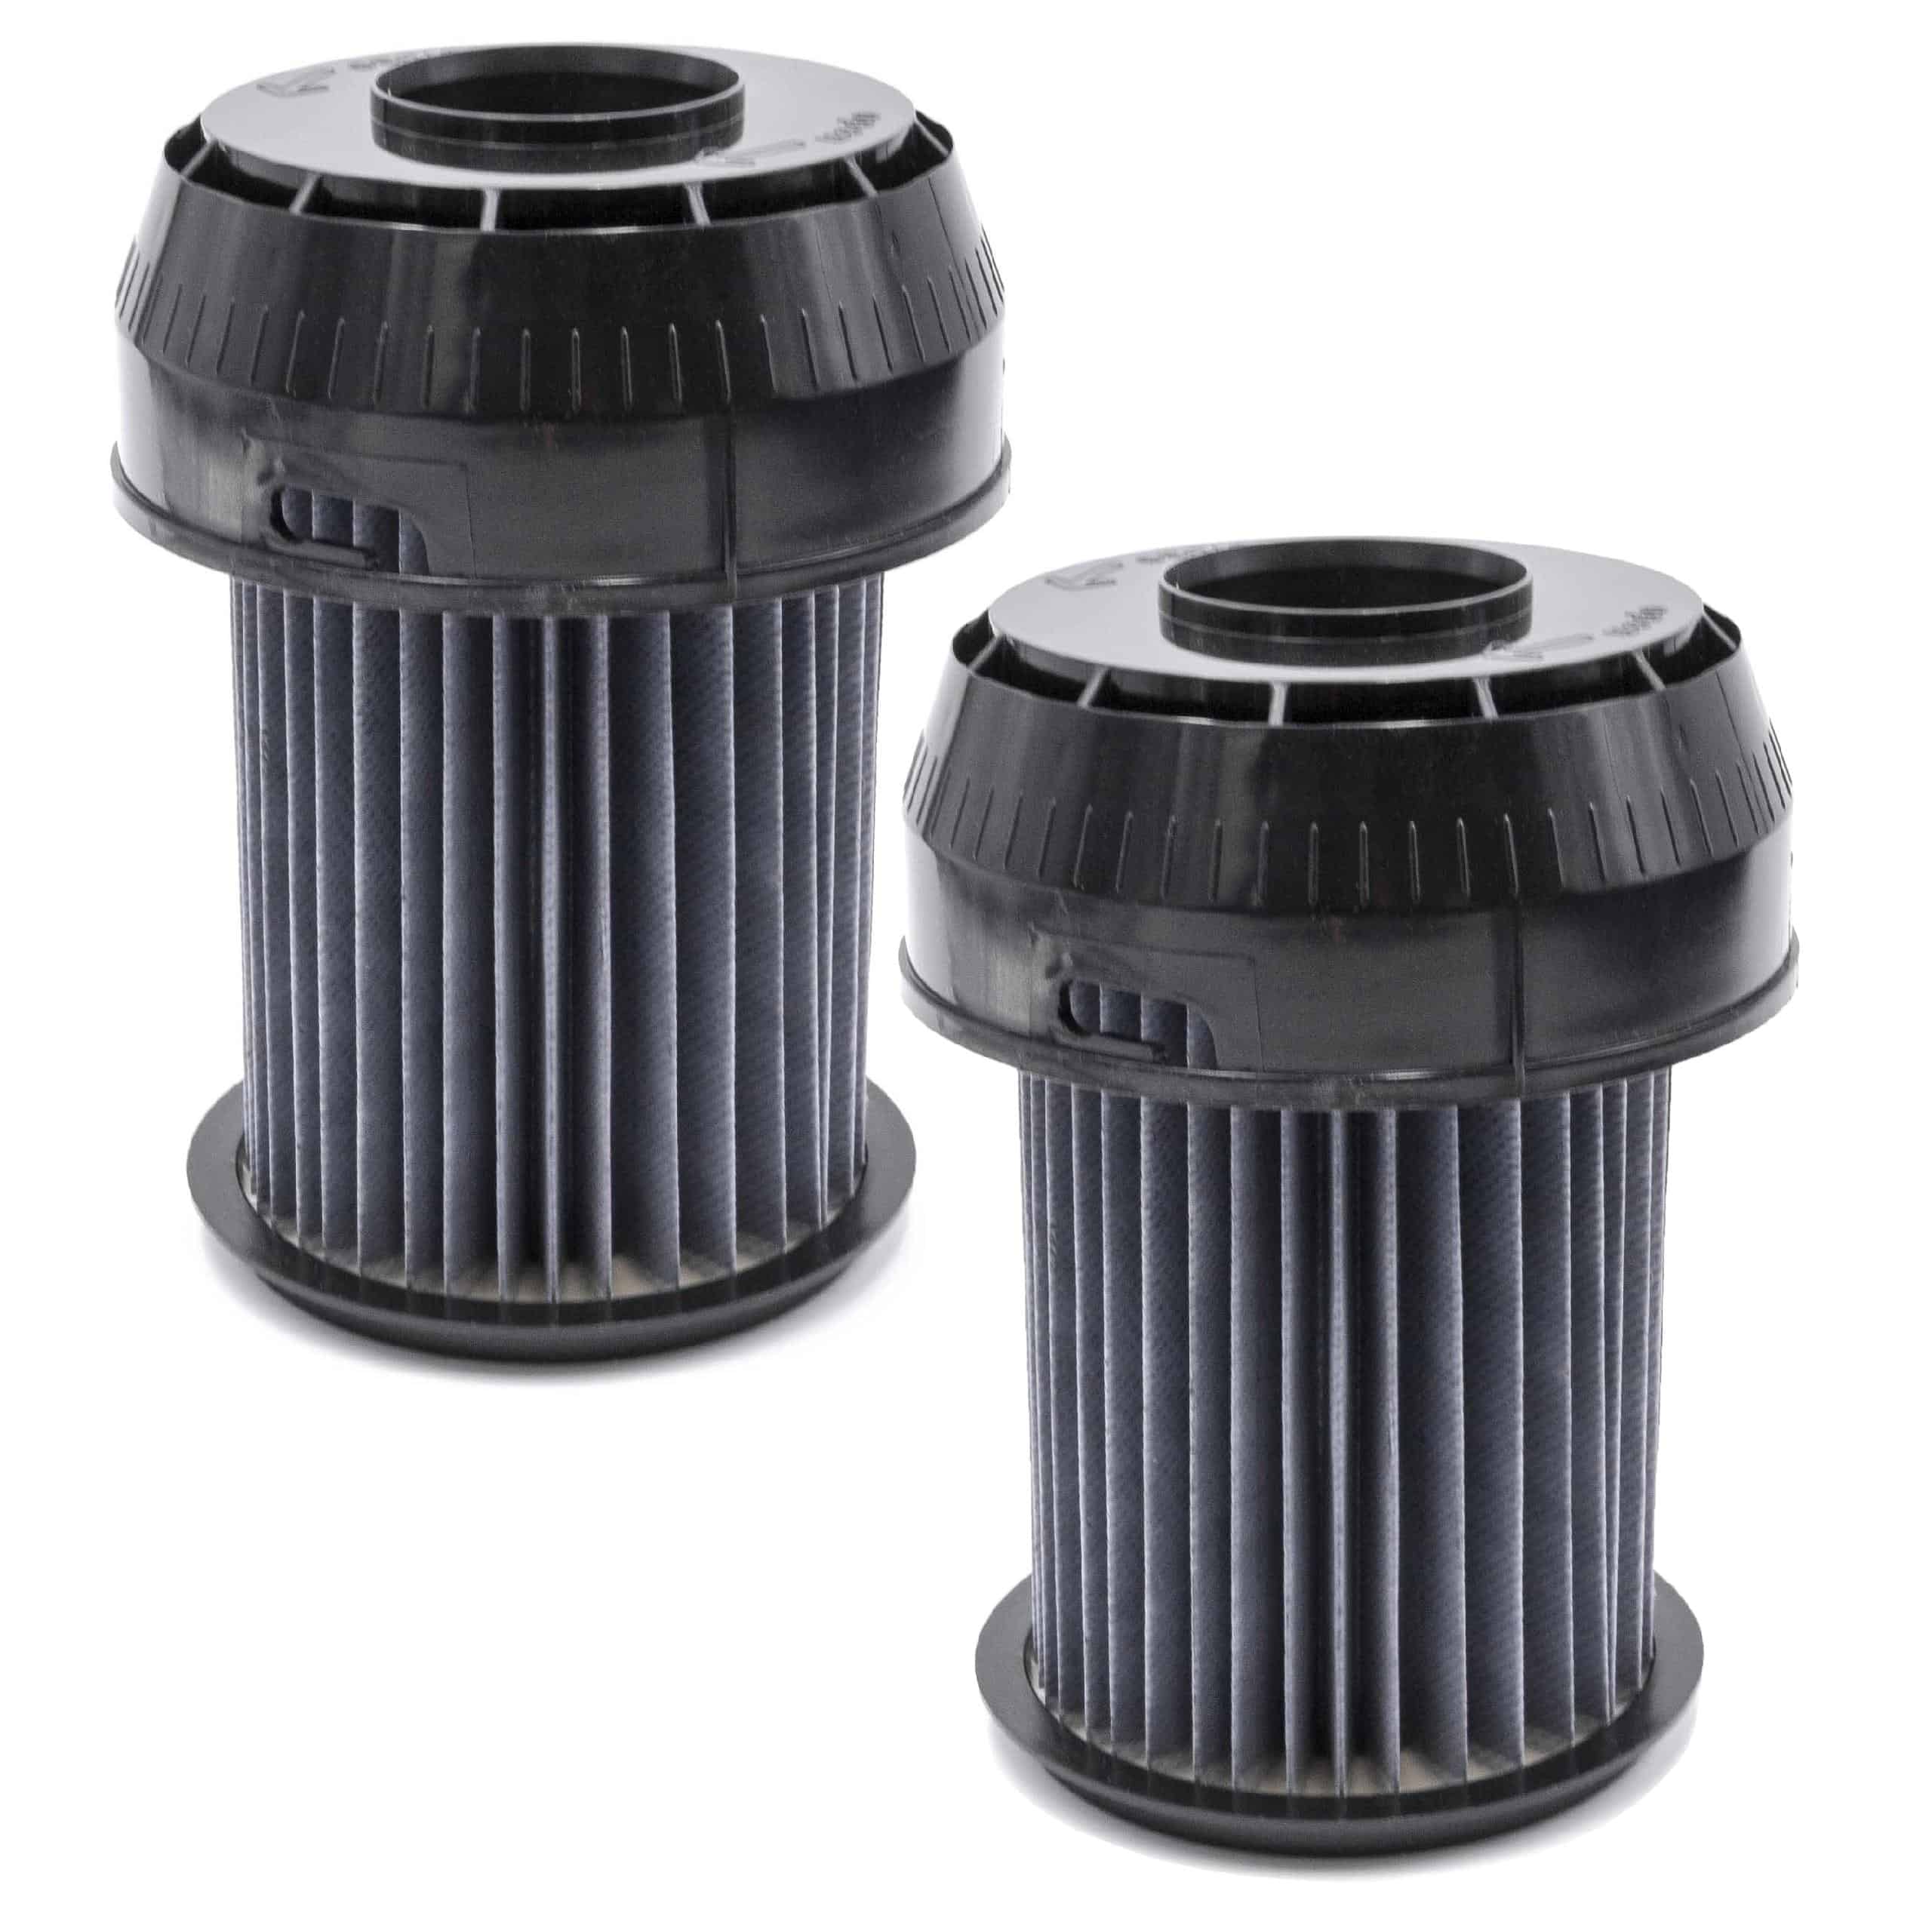 2x Filtro reemplaza Bosch 2609256d46, 00649841 para aspiradora - filtro laminar, negro